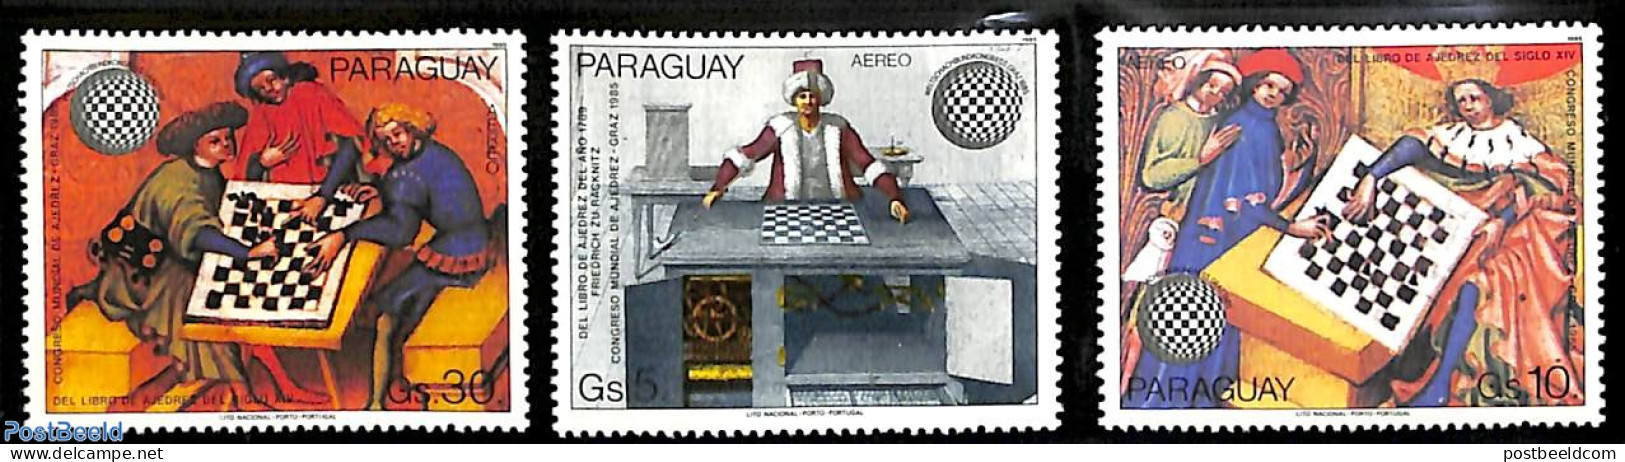 Paraguay 1985 Chess Congress 3v, Mint NH, Sport - Chess - Echecs